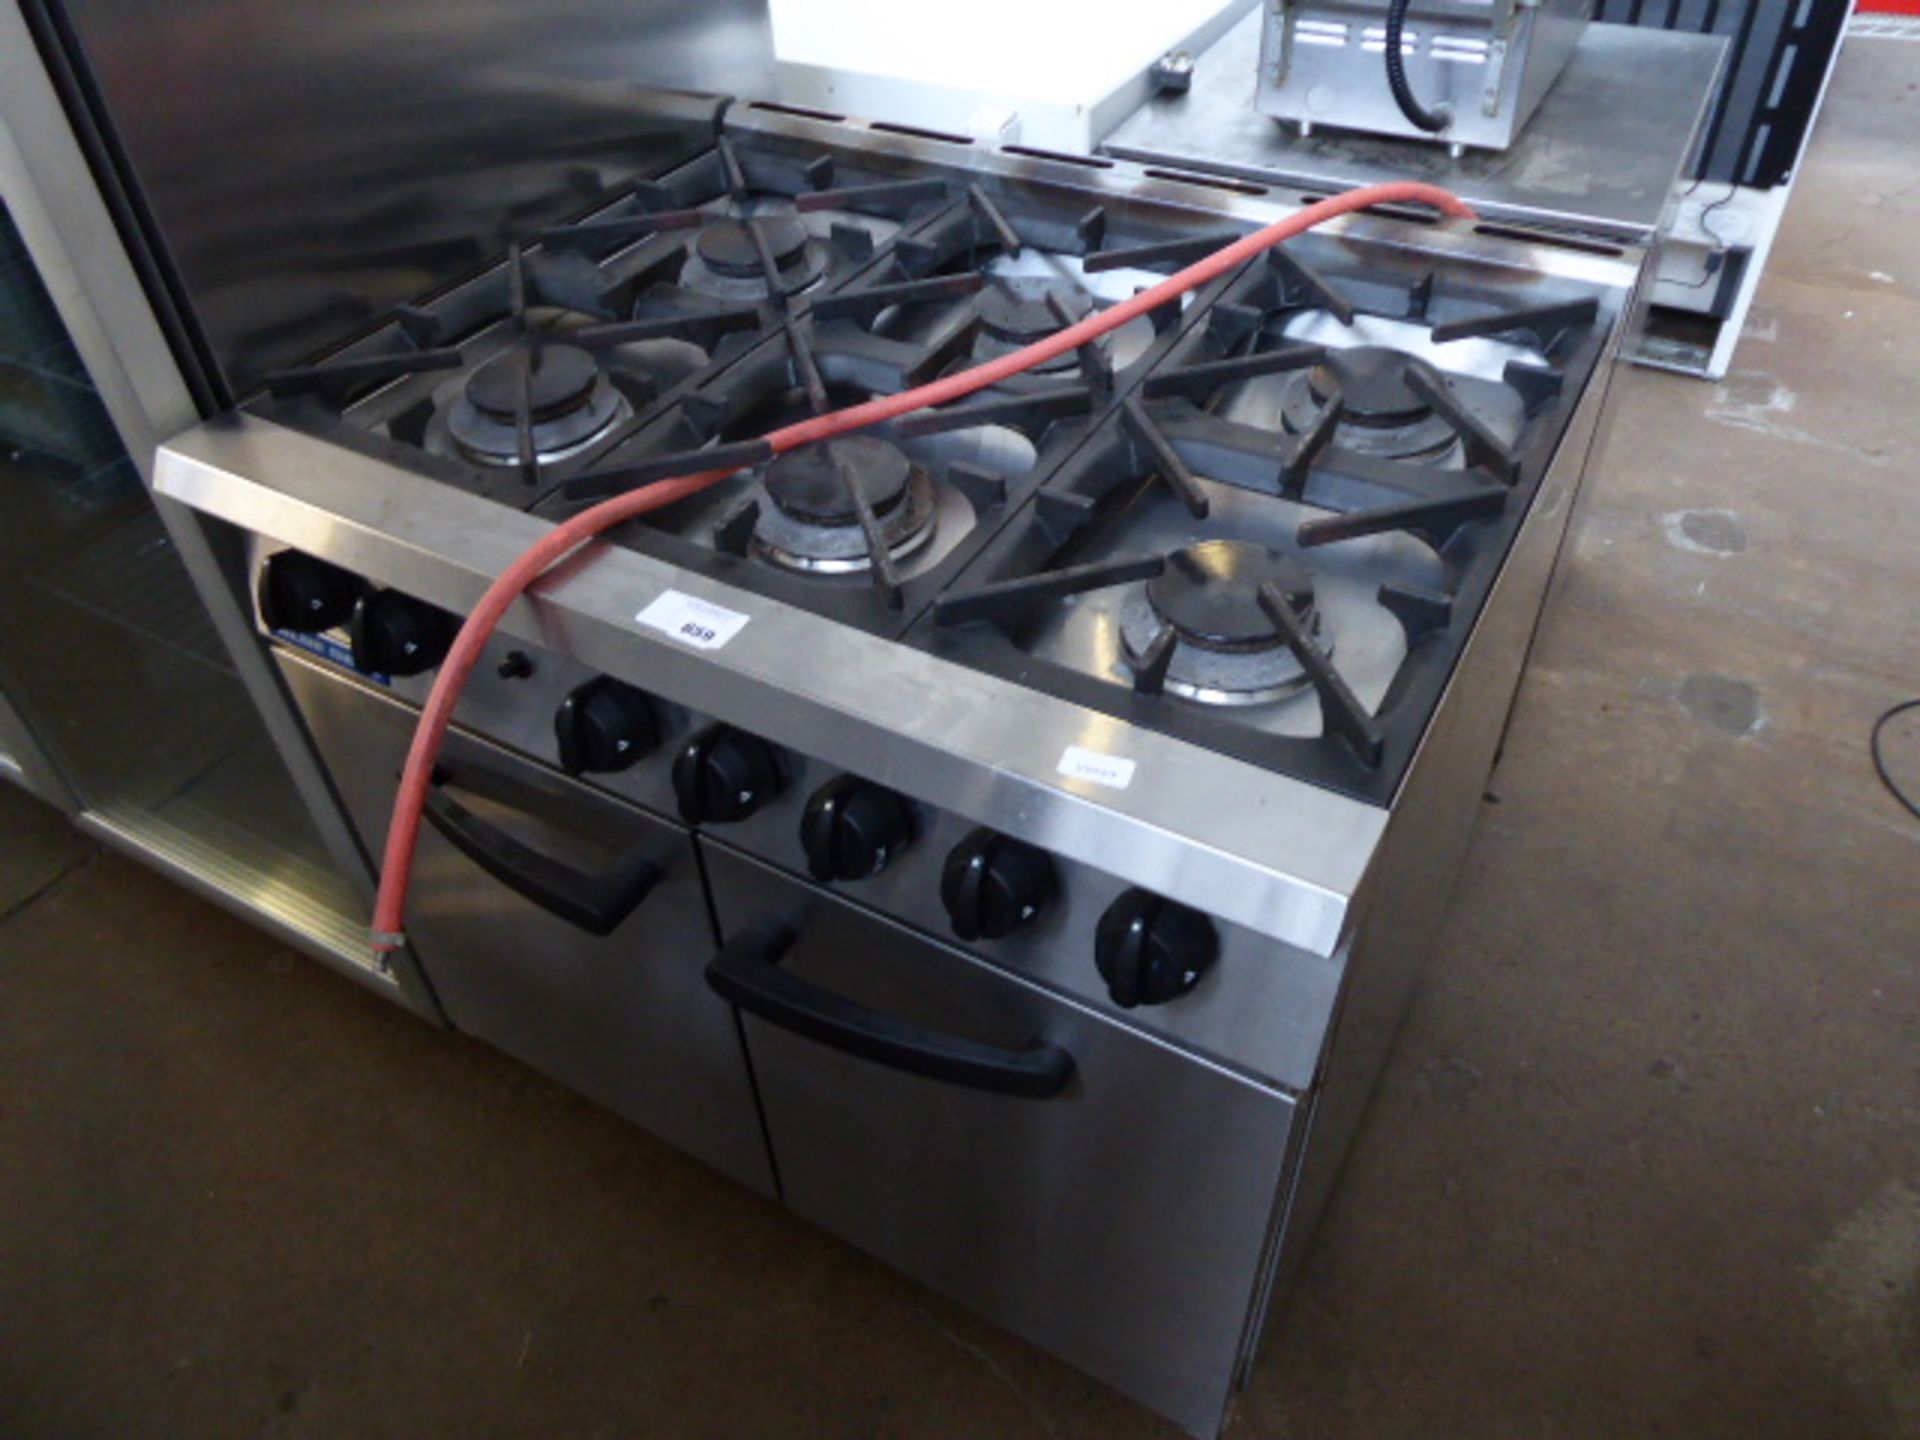 90cm LPG Blueseal 6 burner cooker with 2 door oven under